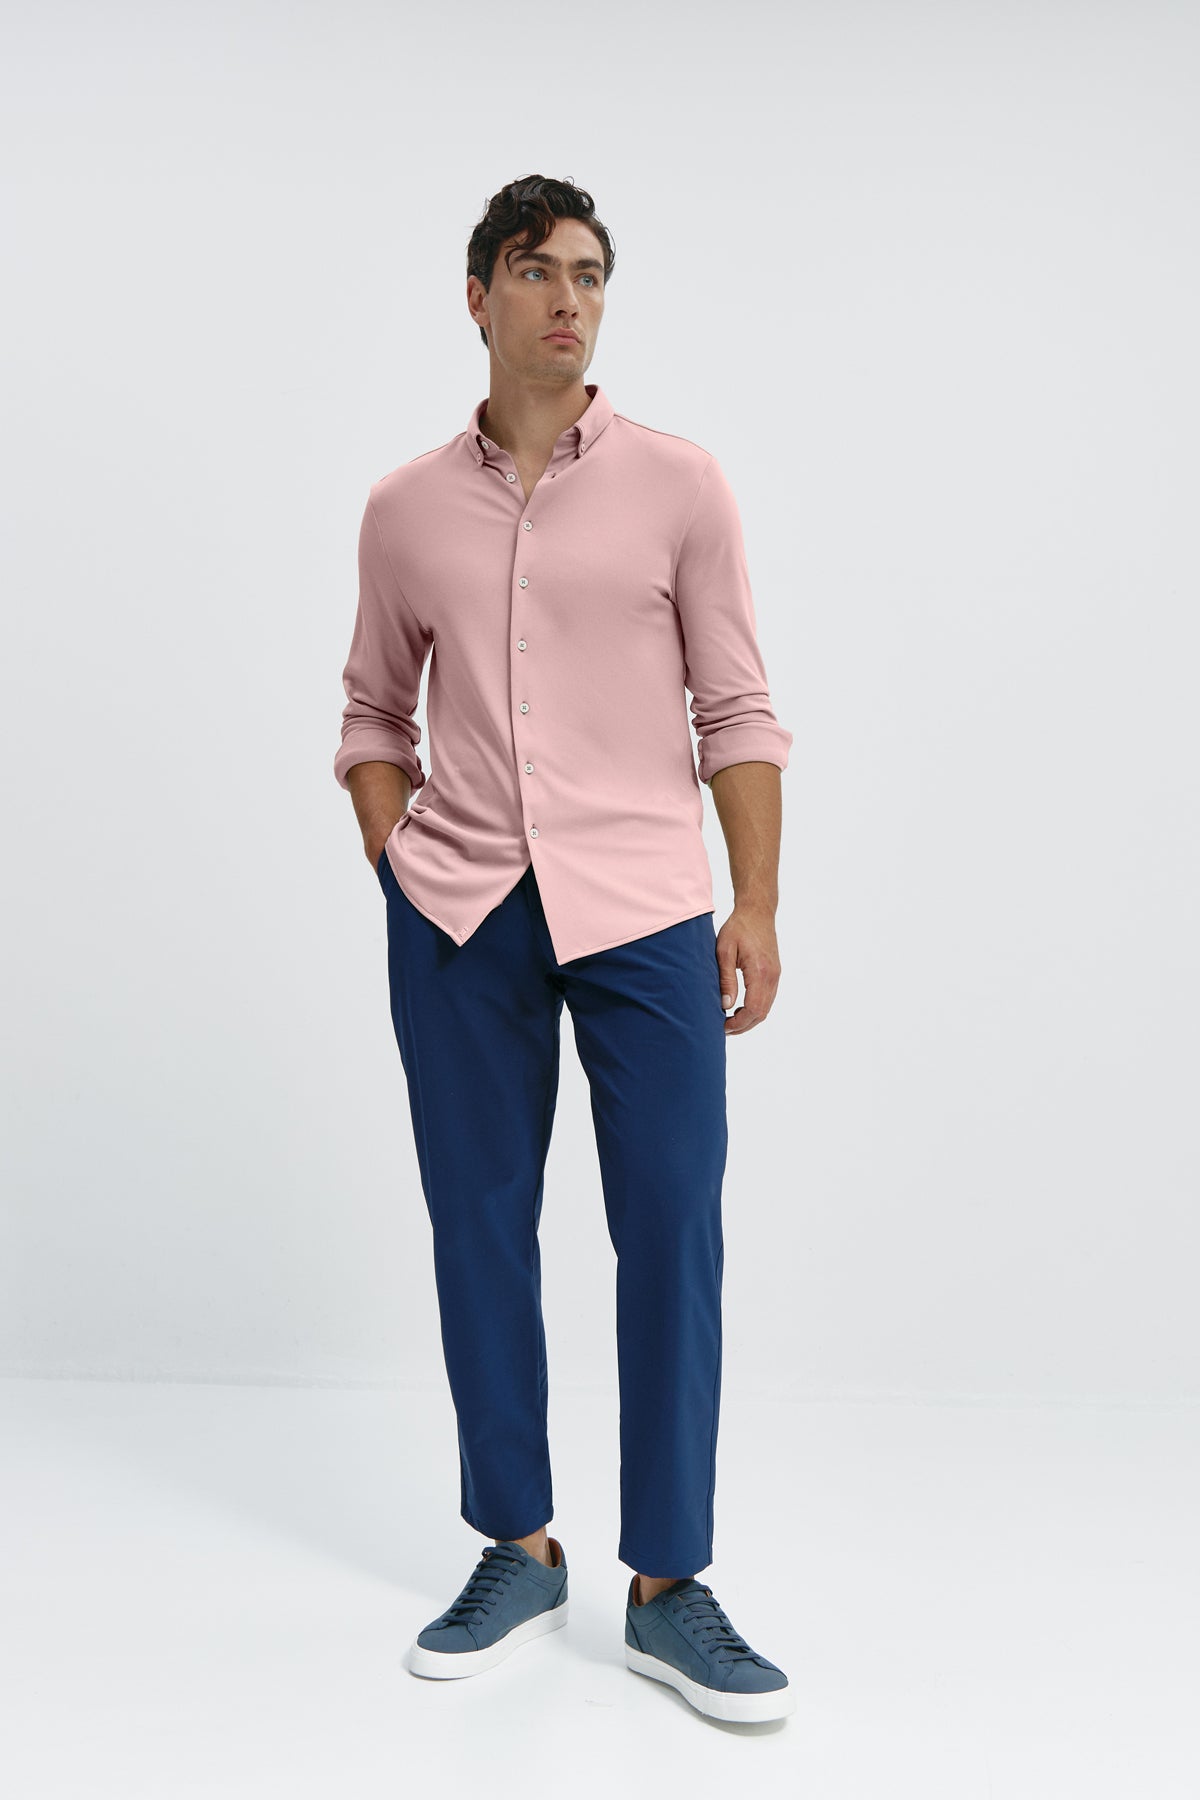 Camisa casual rosa salinas para hombre sin arrugas ni manchas. Manga larga, antiarrugas y antimanchas. Foto cuerpo entero